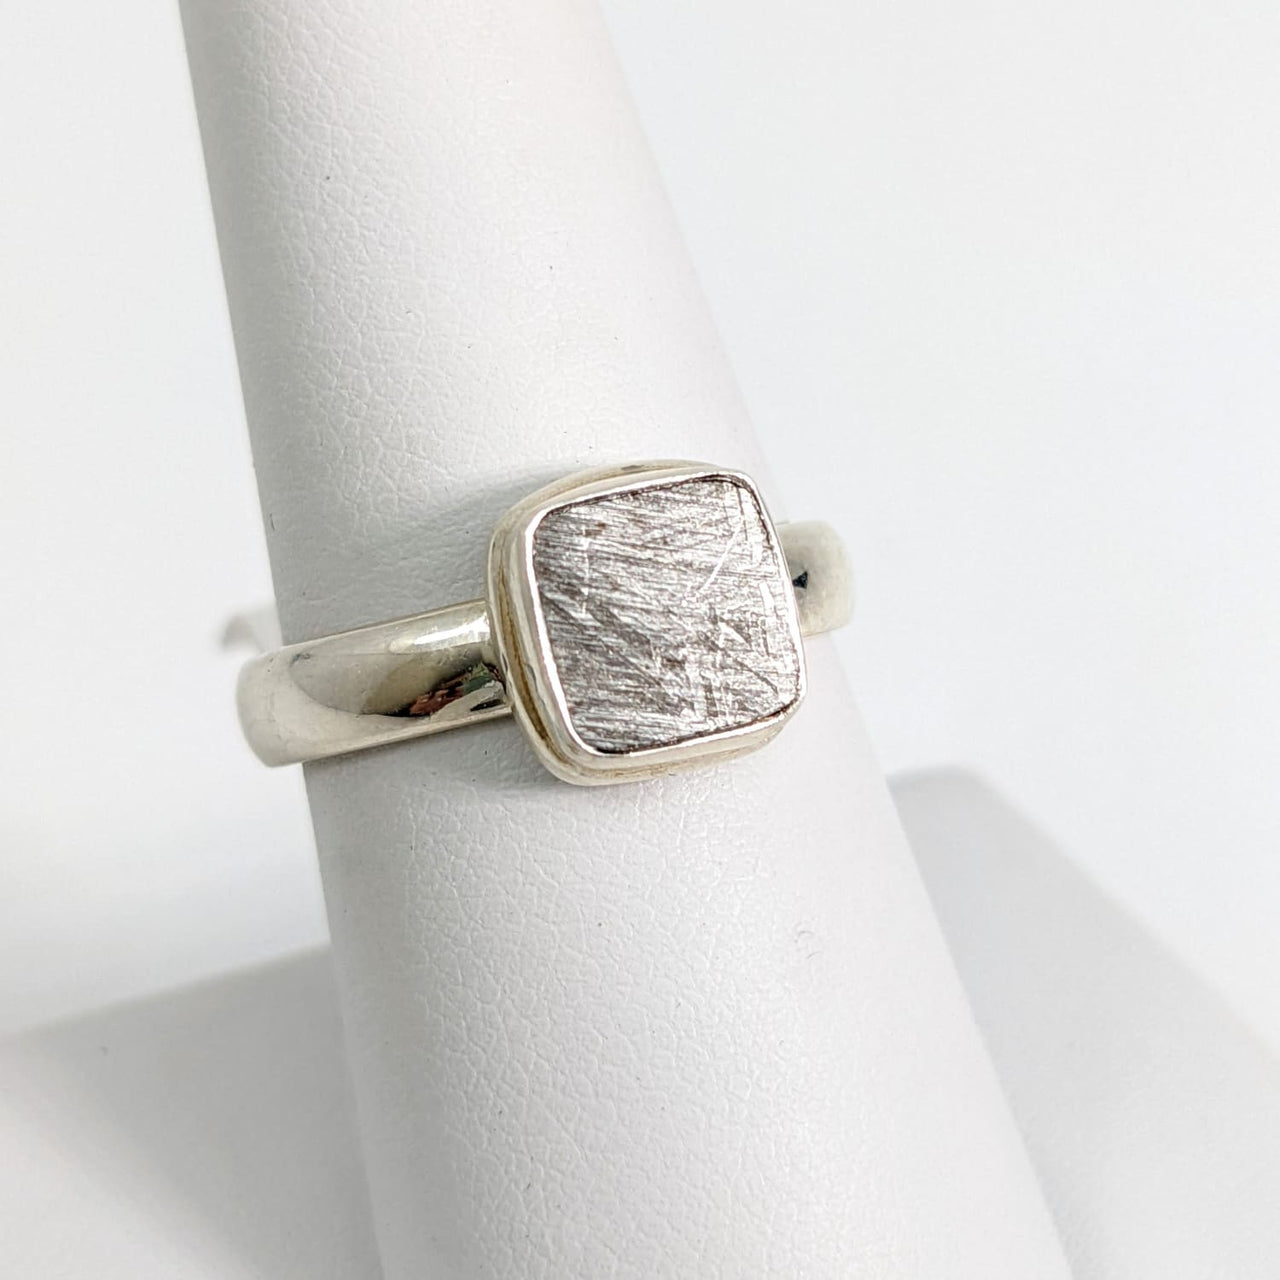 Muonionalusta Meteorite Ring Sz 8 #SK8556 - $99